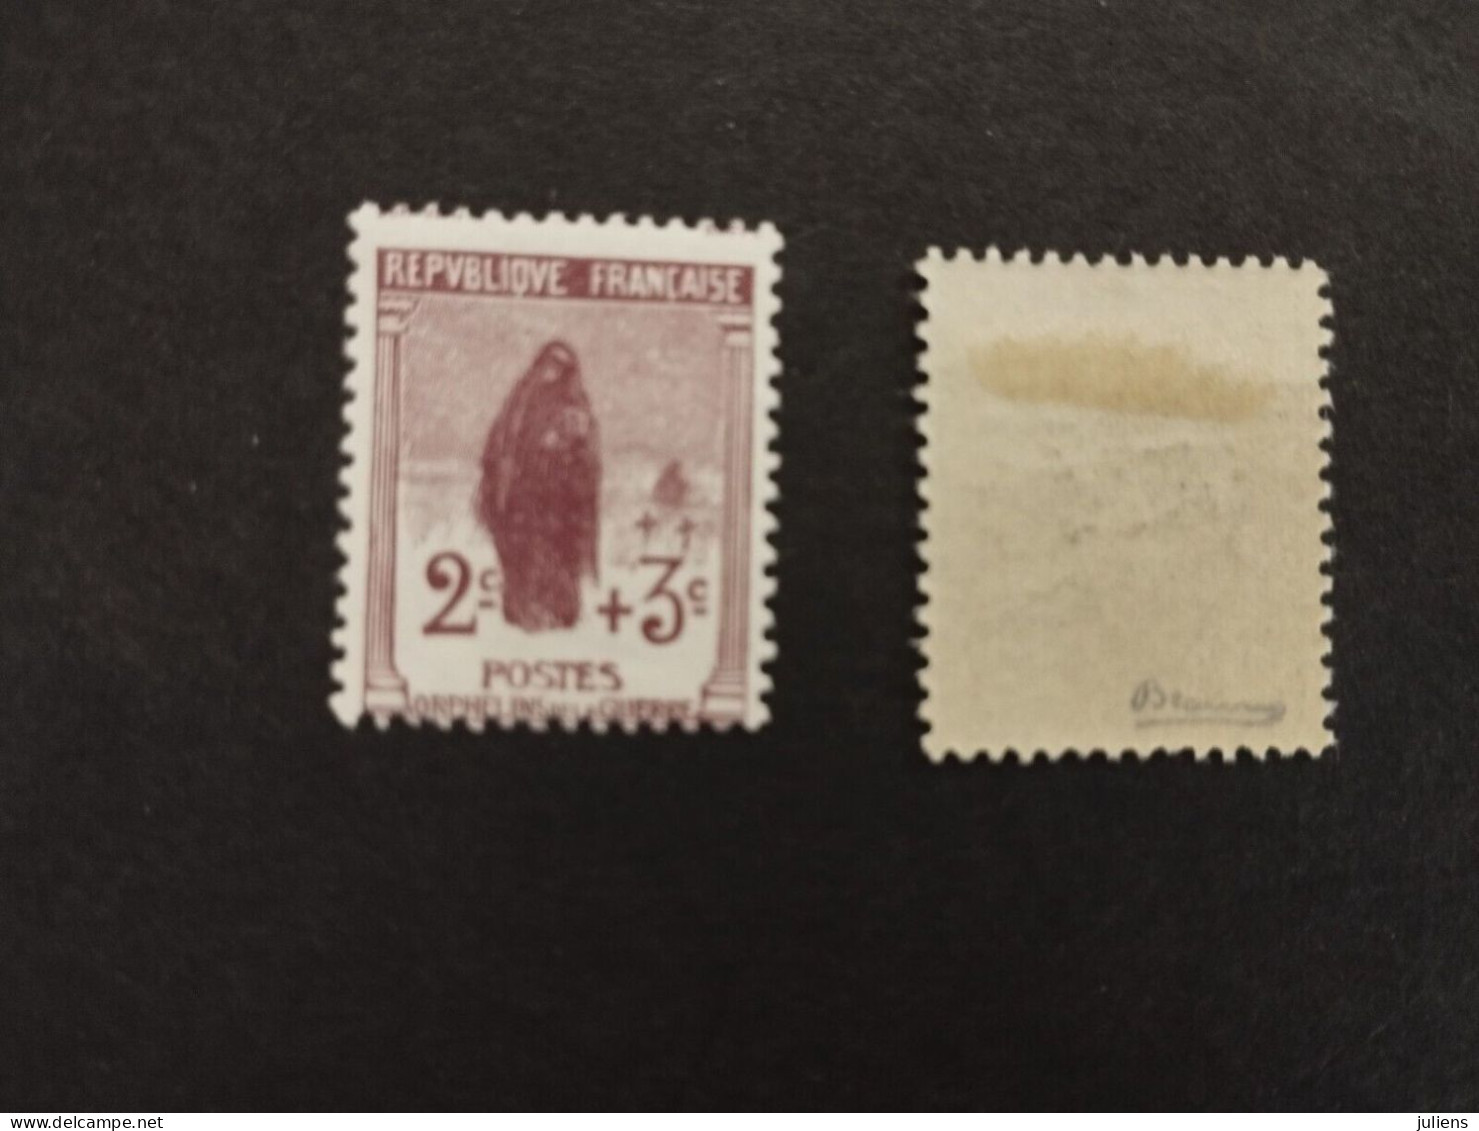 France 1 SERIE ORPHELINS DE LA GUERRE NEUF 148 149 150 151 152 153 154 155 SIGNE - Unused Stamps